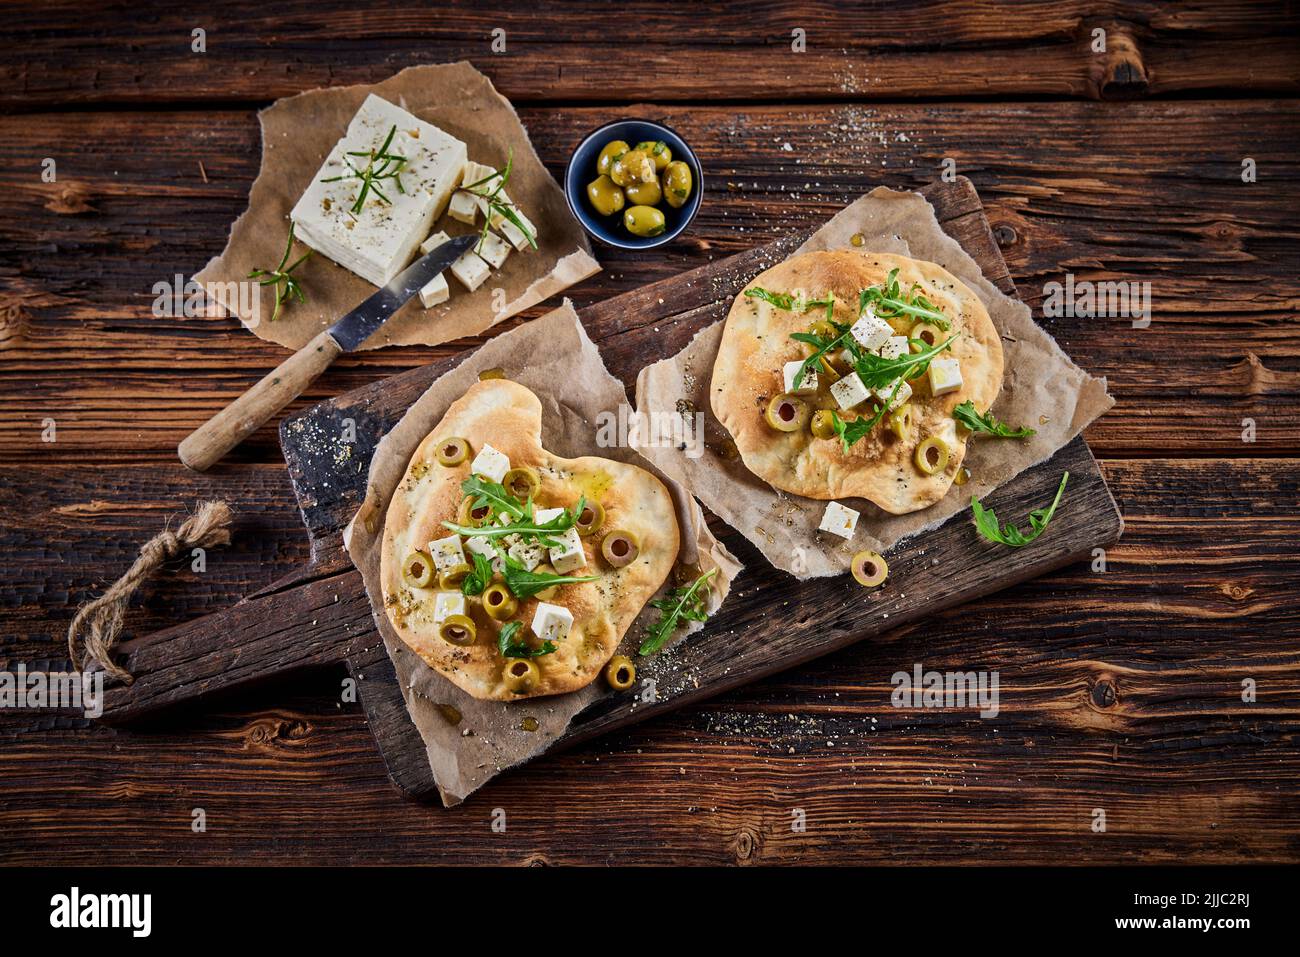 Vista superior de un delicioso plato con pan de pita crujiente adornado con aceitunas de queso feta y hierbas servidas sobre una tabla de madera en la mesa Foto de stock